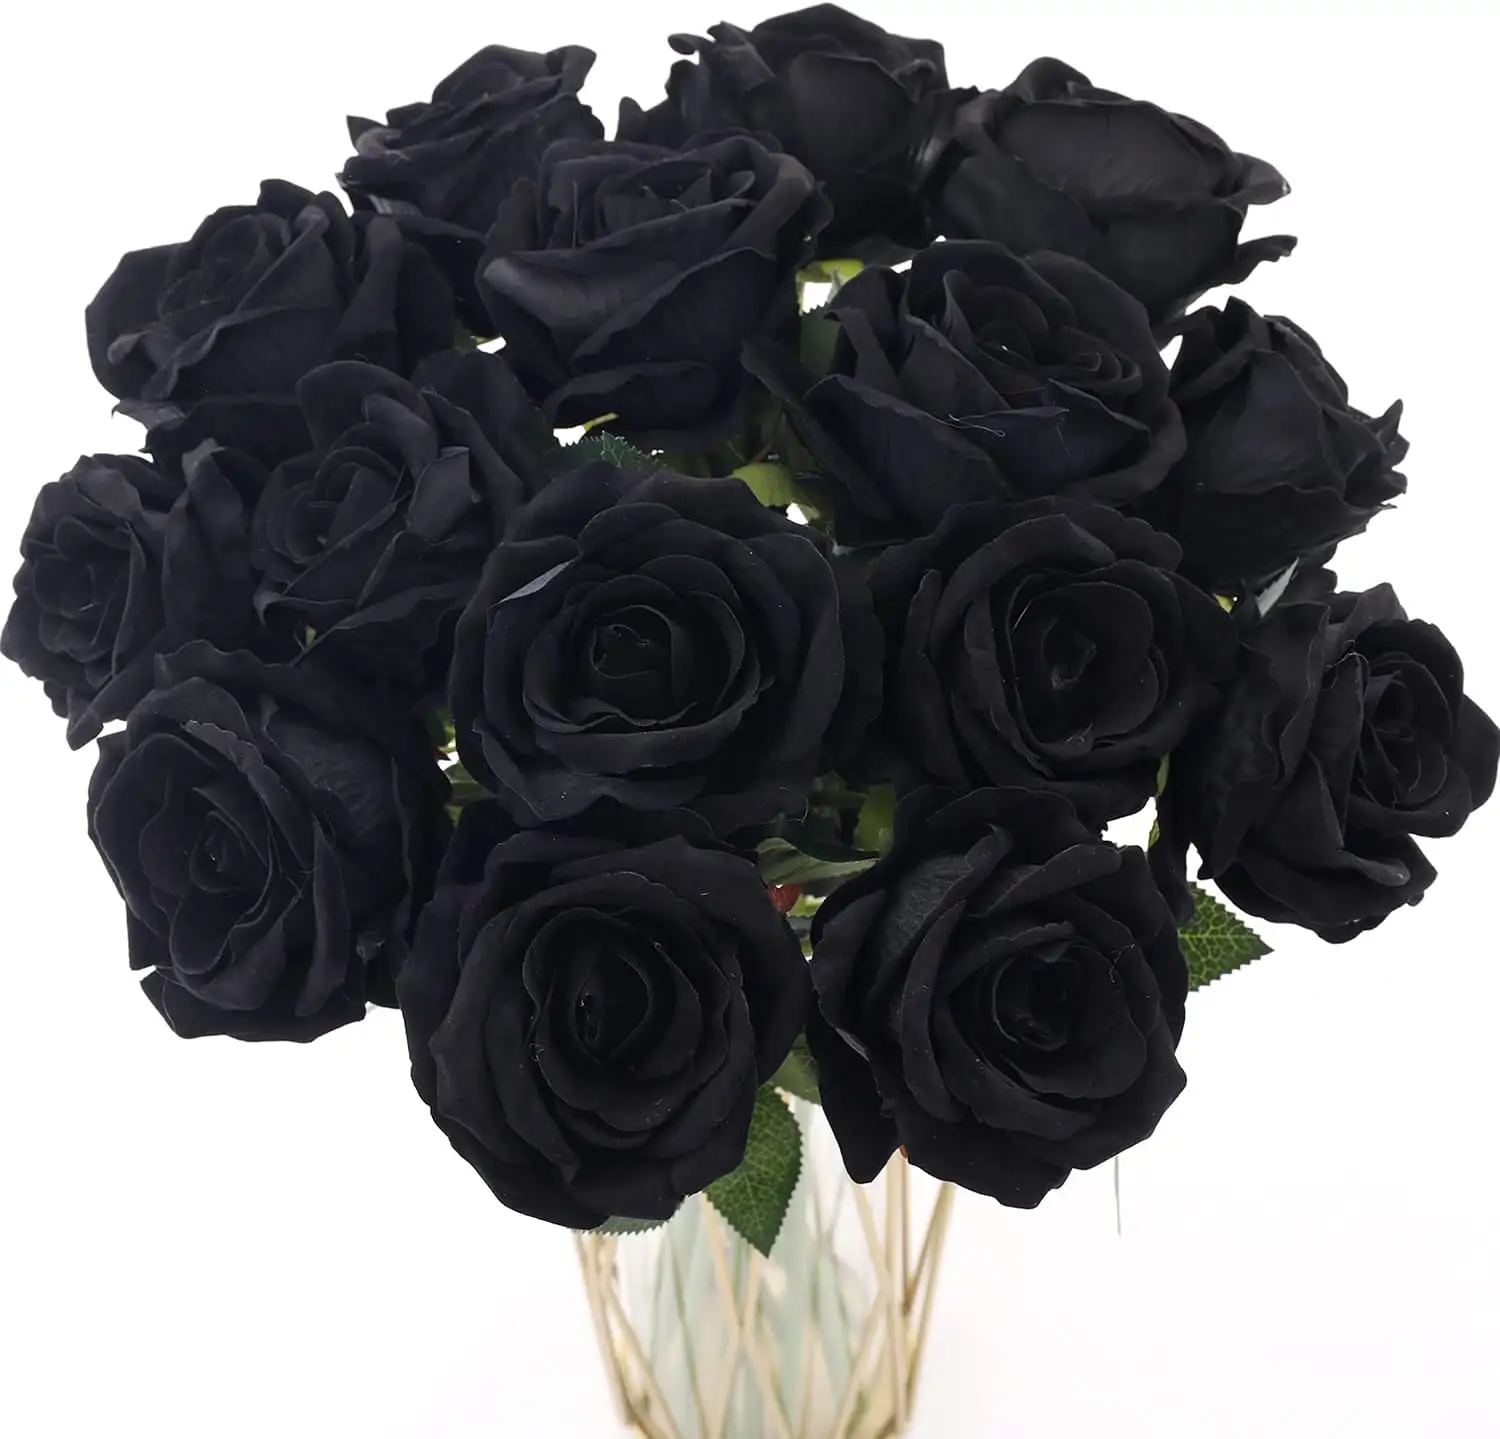 Kunstmatige Zwarte Roze Bloemen Voor Decoratie Diy, Huwelijksfeest, Halloween Decoratie